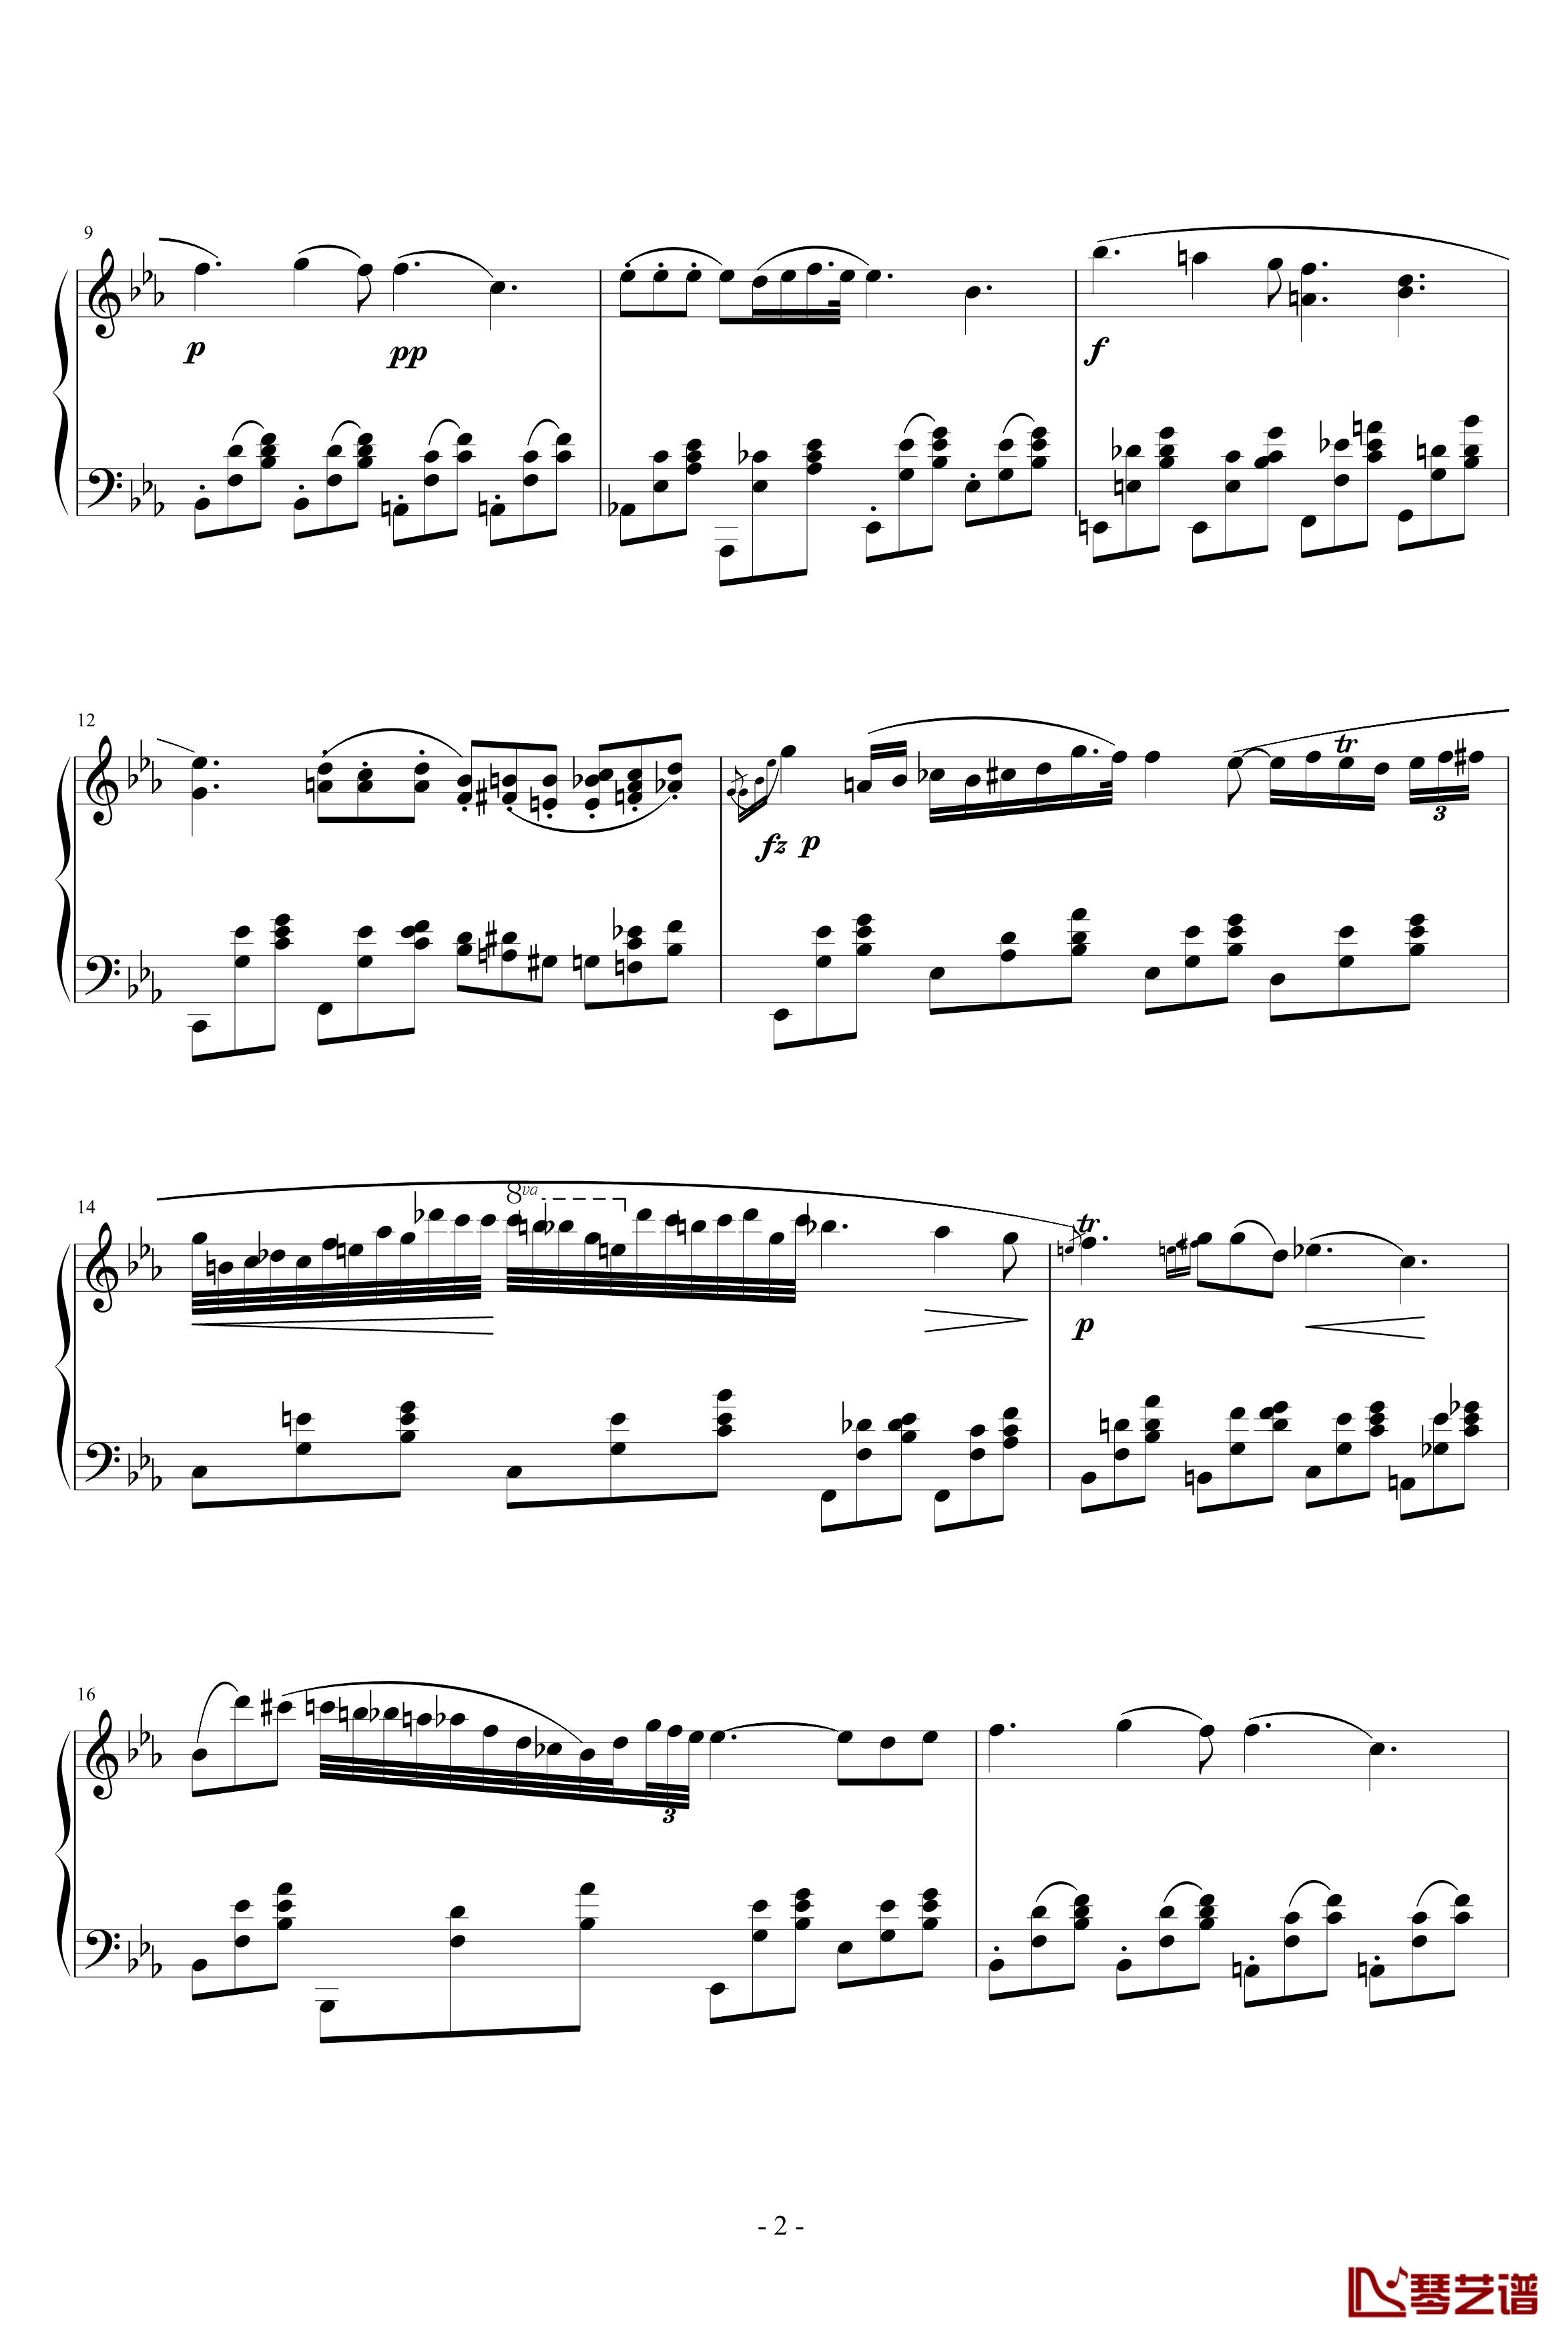 降E大调夜曲钢琴谱-另一个版本-肖邦-chopin2